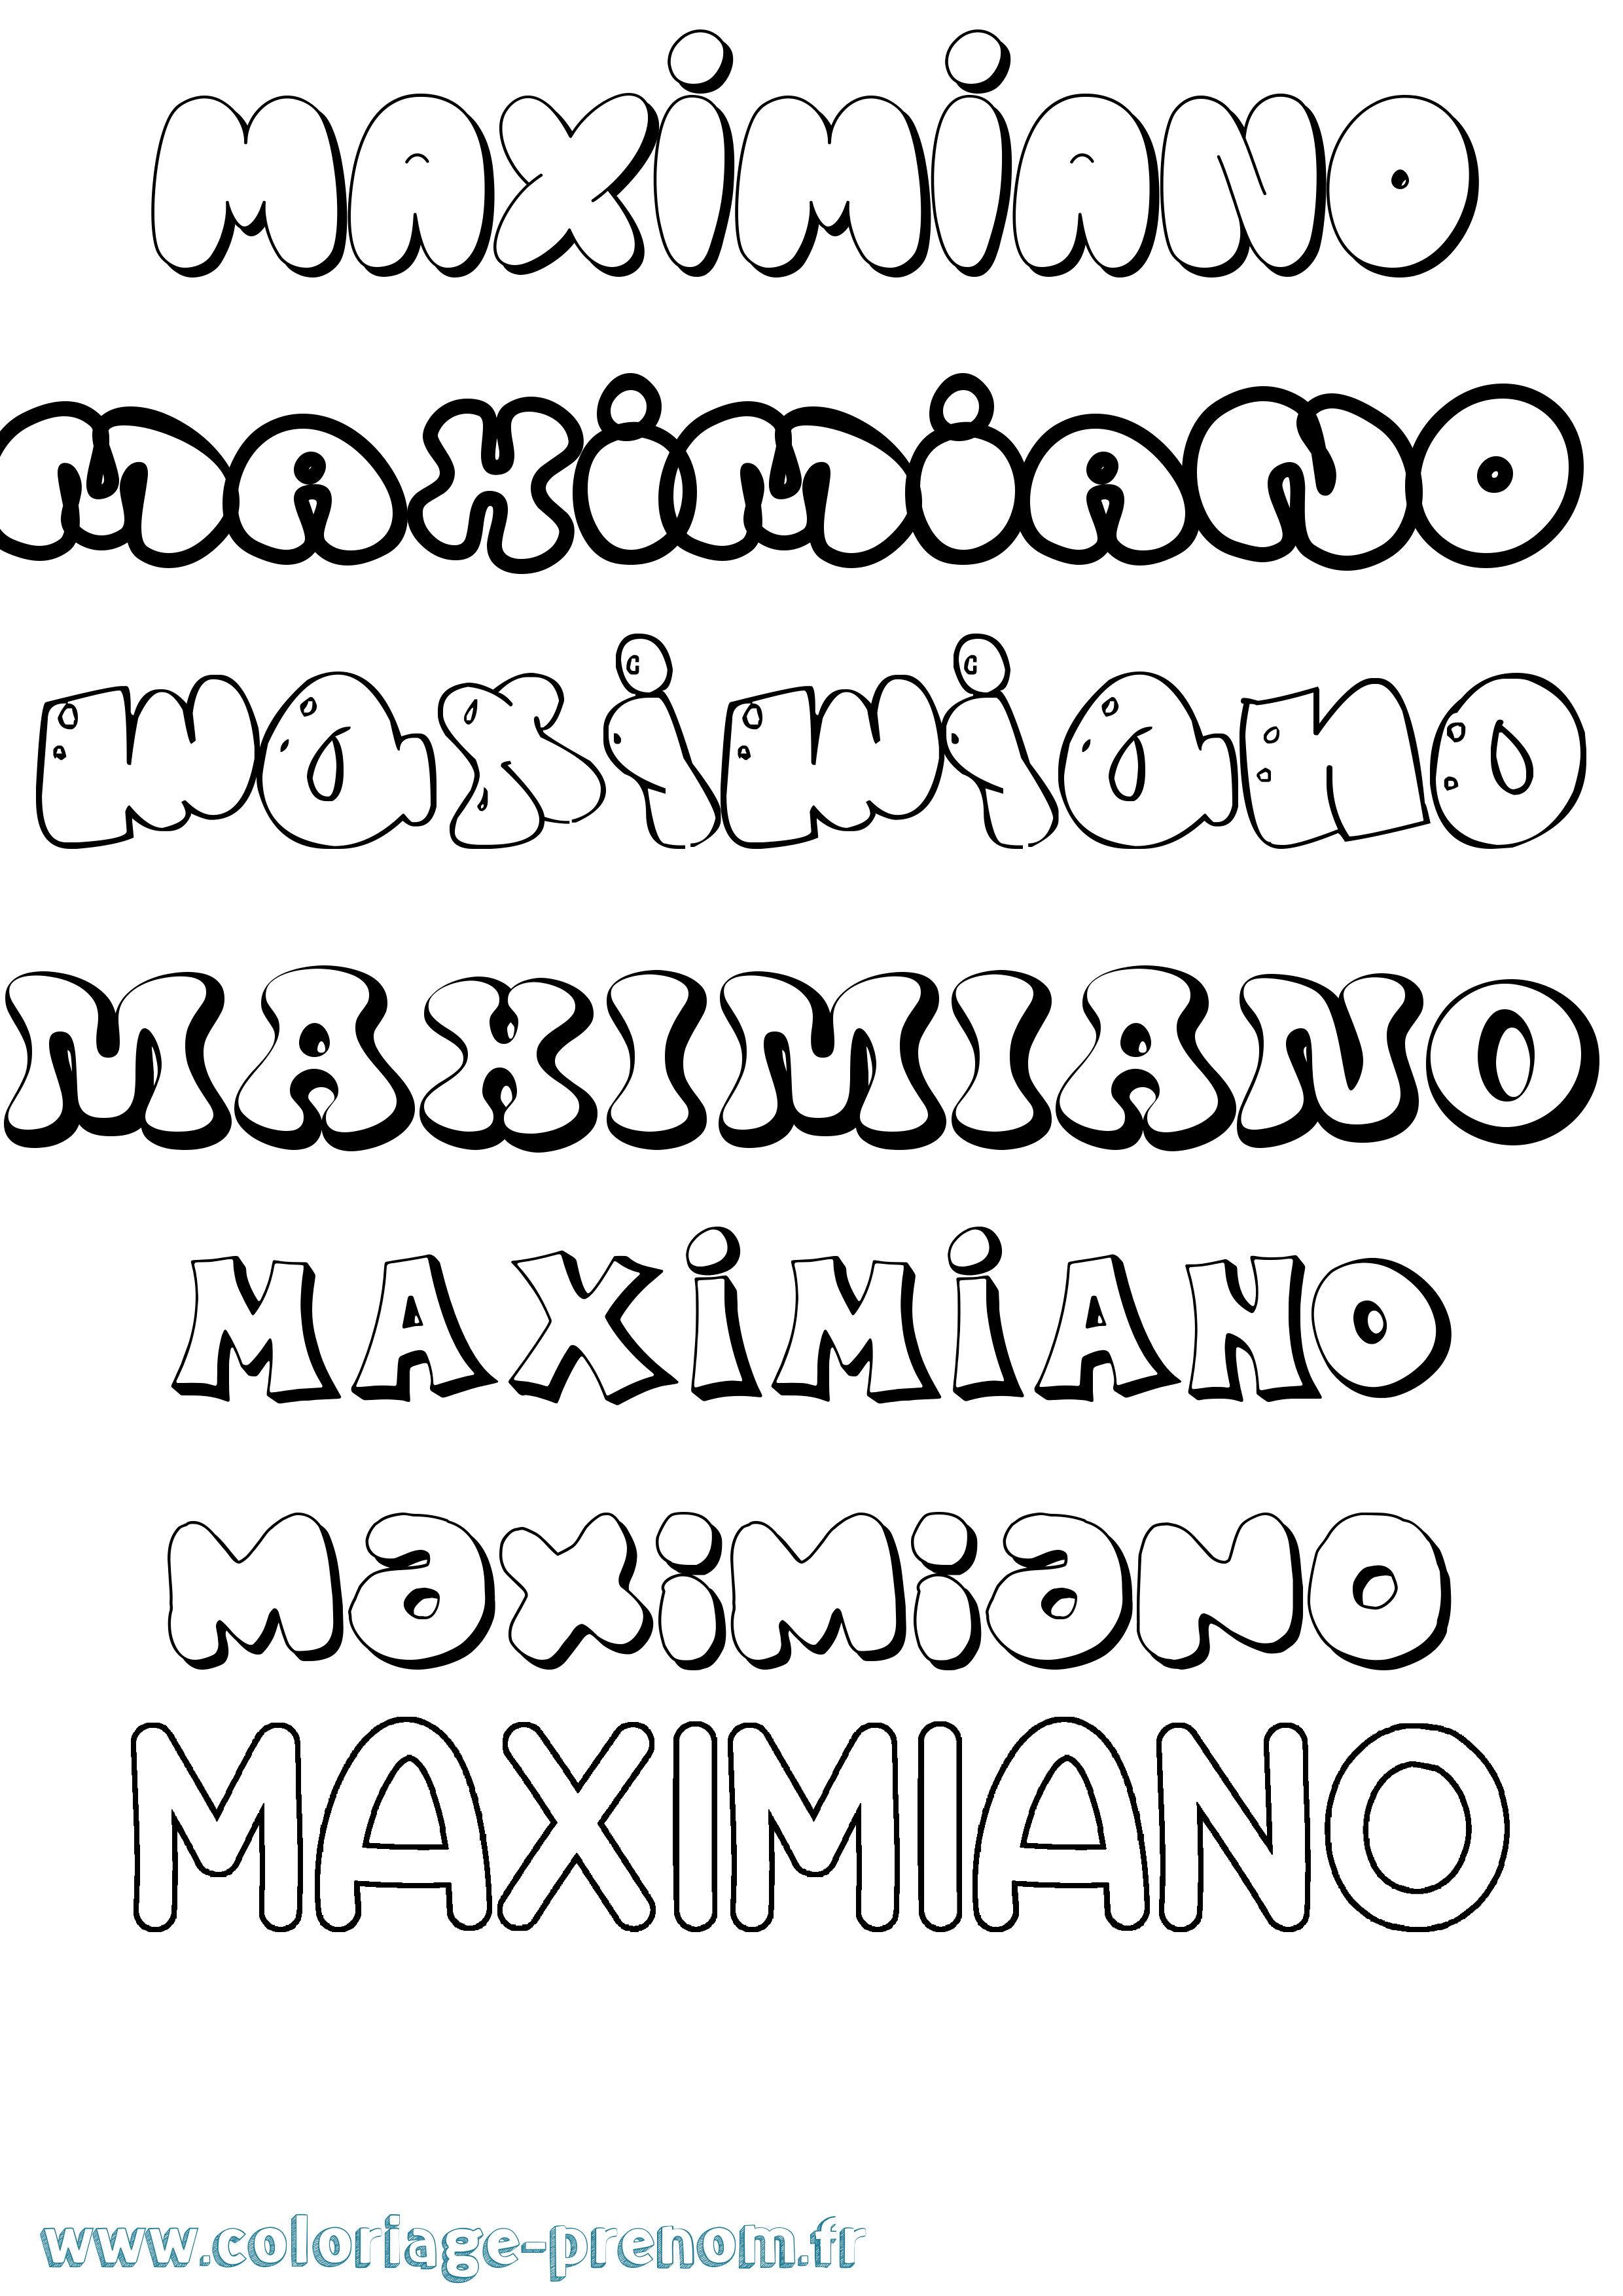 Coloriage prénom Maximiano Bubble